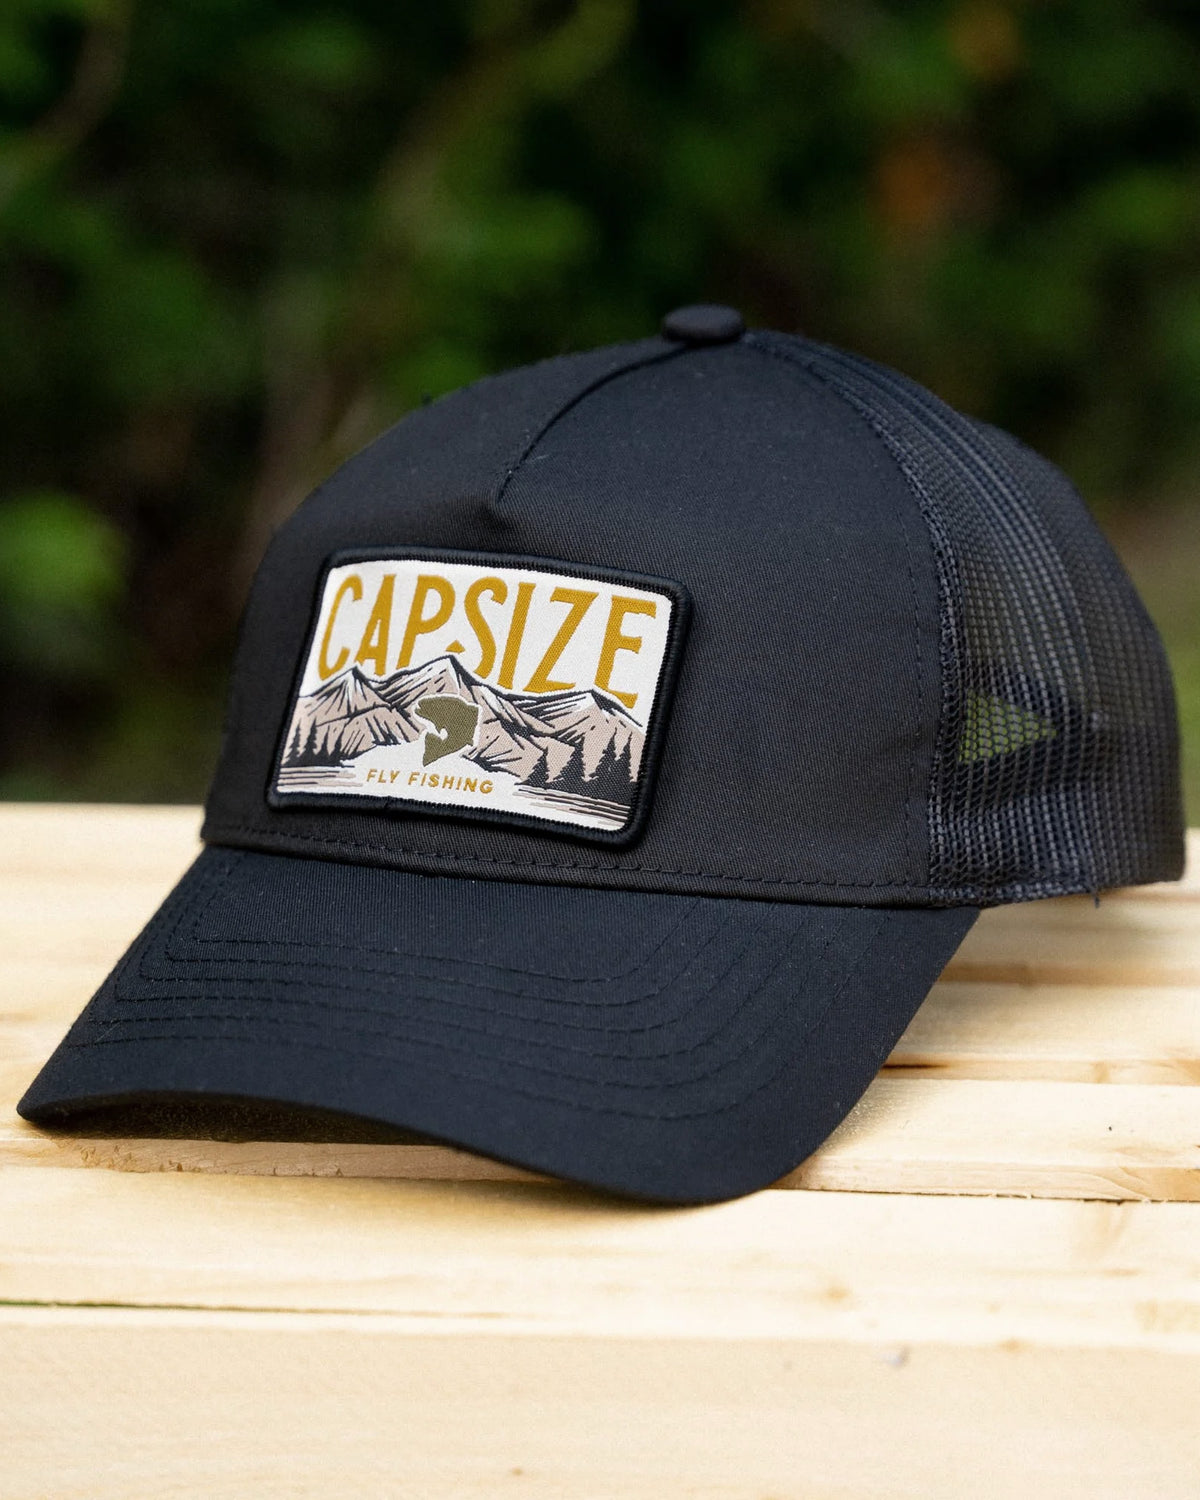 Fly Fishing Cap in Fishing Hats & Headwear for sale